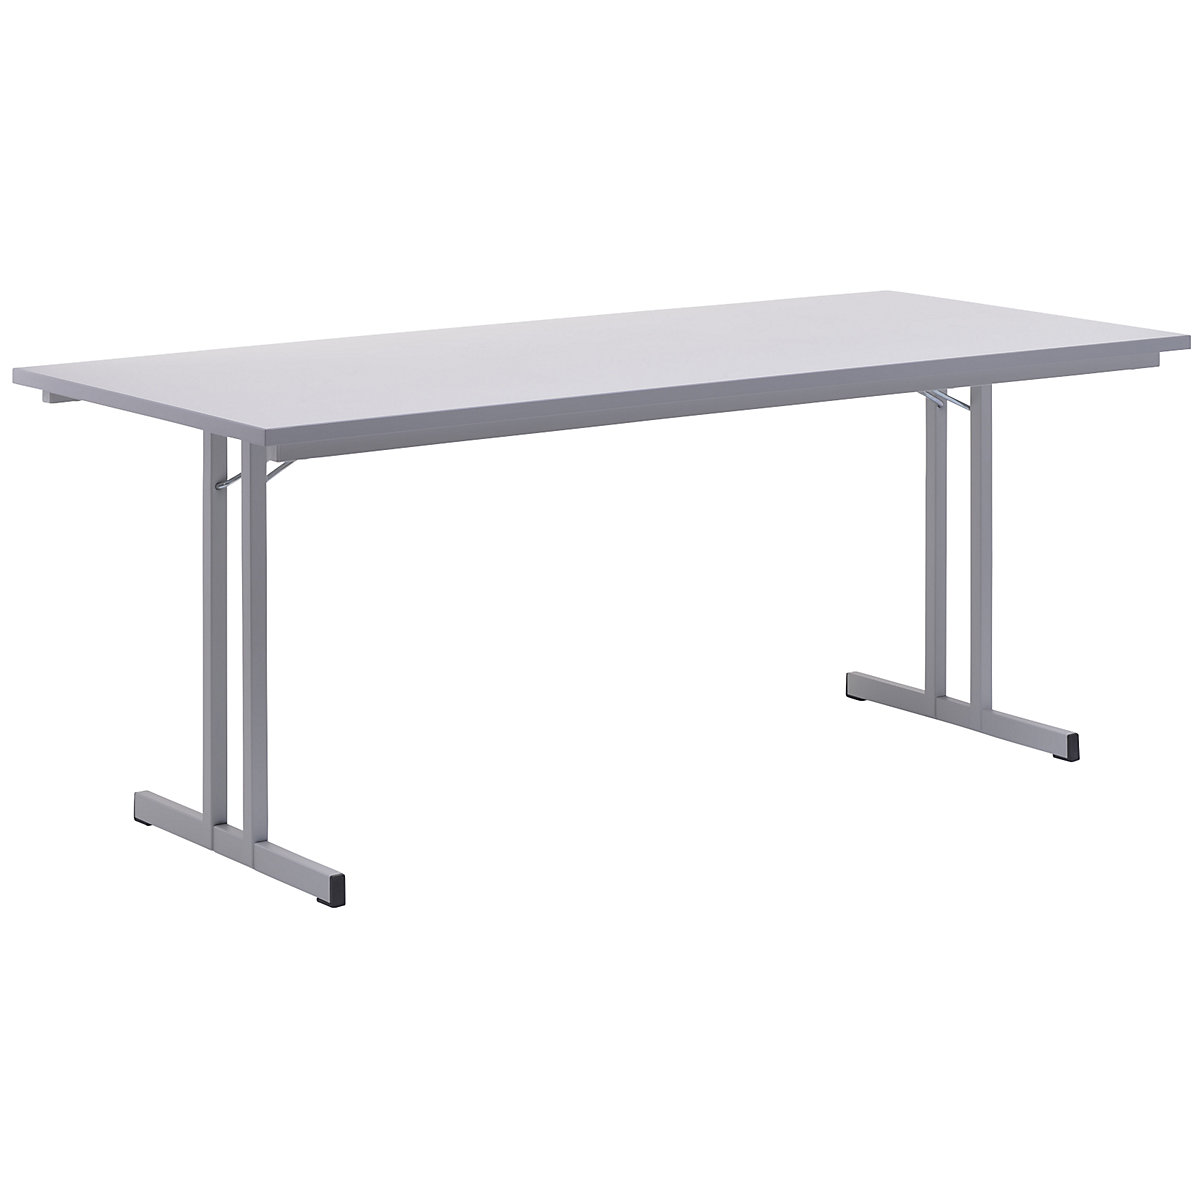 Sklopný stůl, s mimořádně silnou deskou, výška 720 mm, 1800 x 800 mm, podstavec světle šedý, deska světle šedá